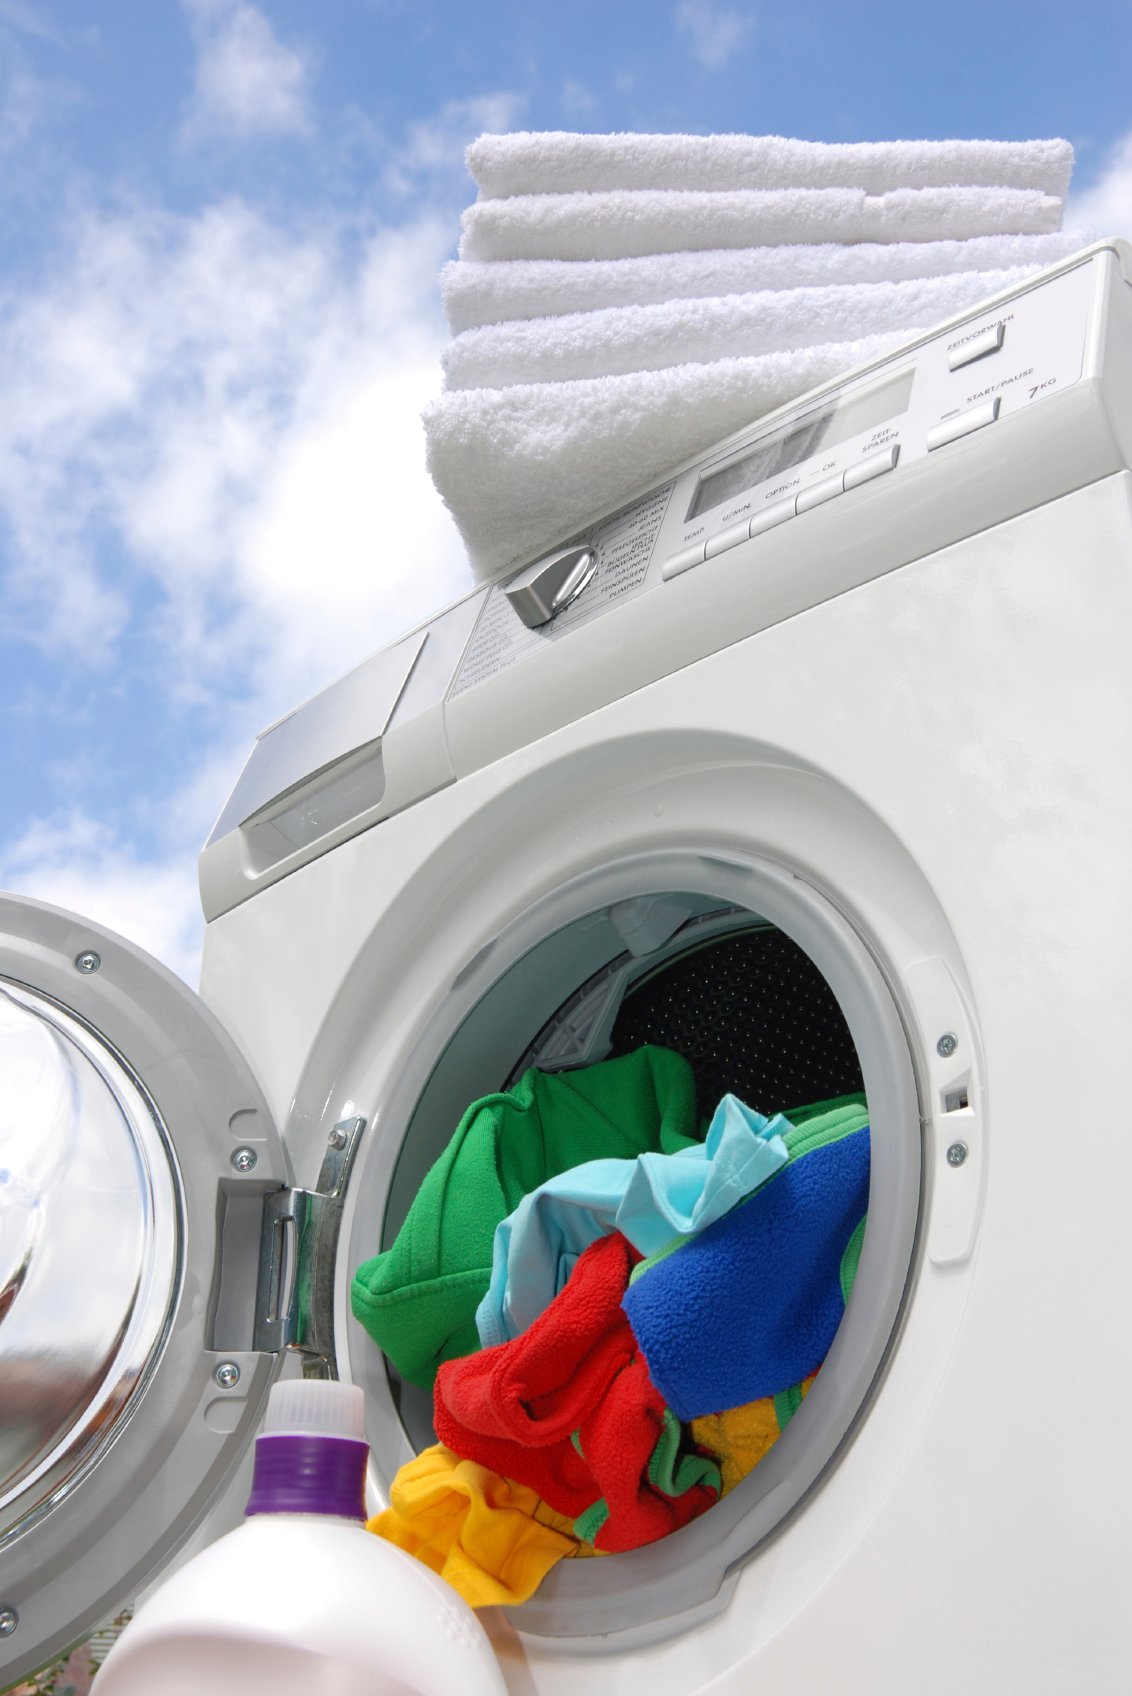 Laundry cleaning. Стиральная машинка с бельем. Стиральная машина и чистое белье. Одежда в стиральной машине. Стиральная машина Laundry.